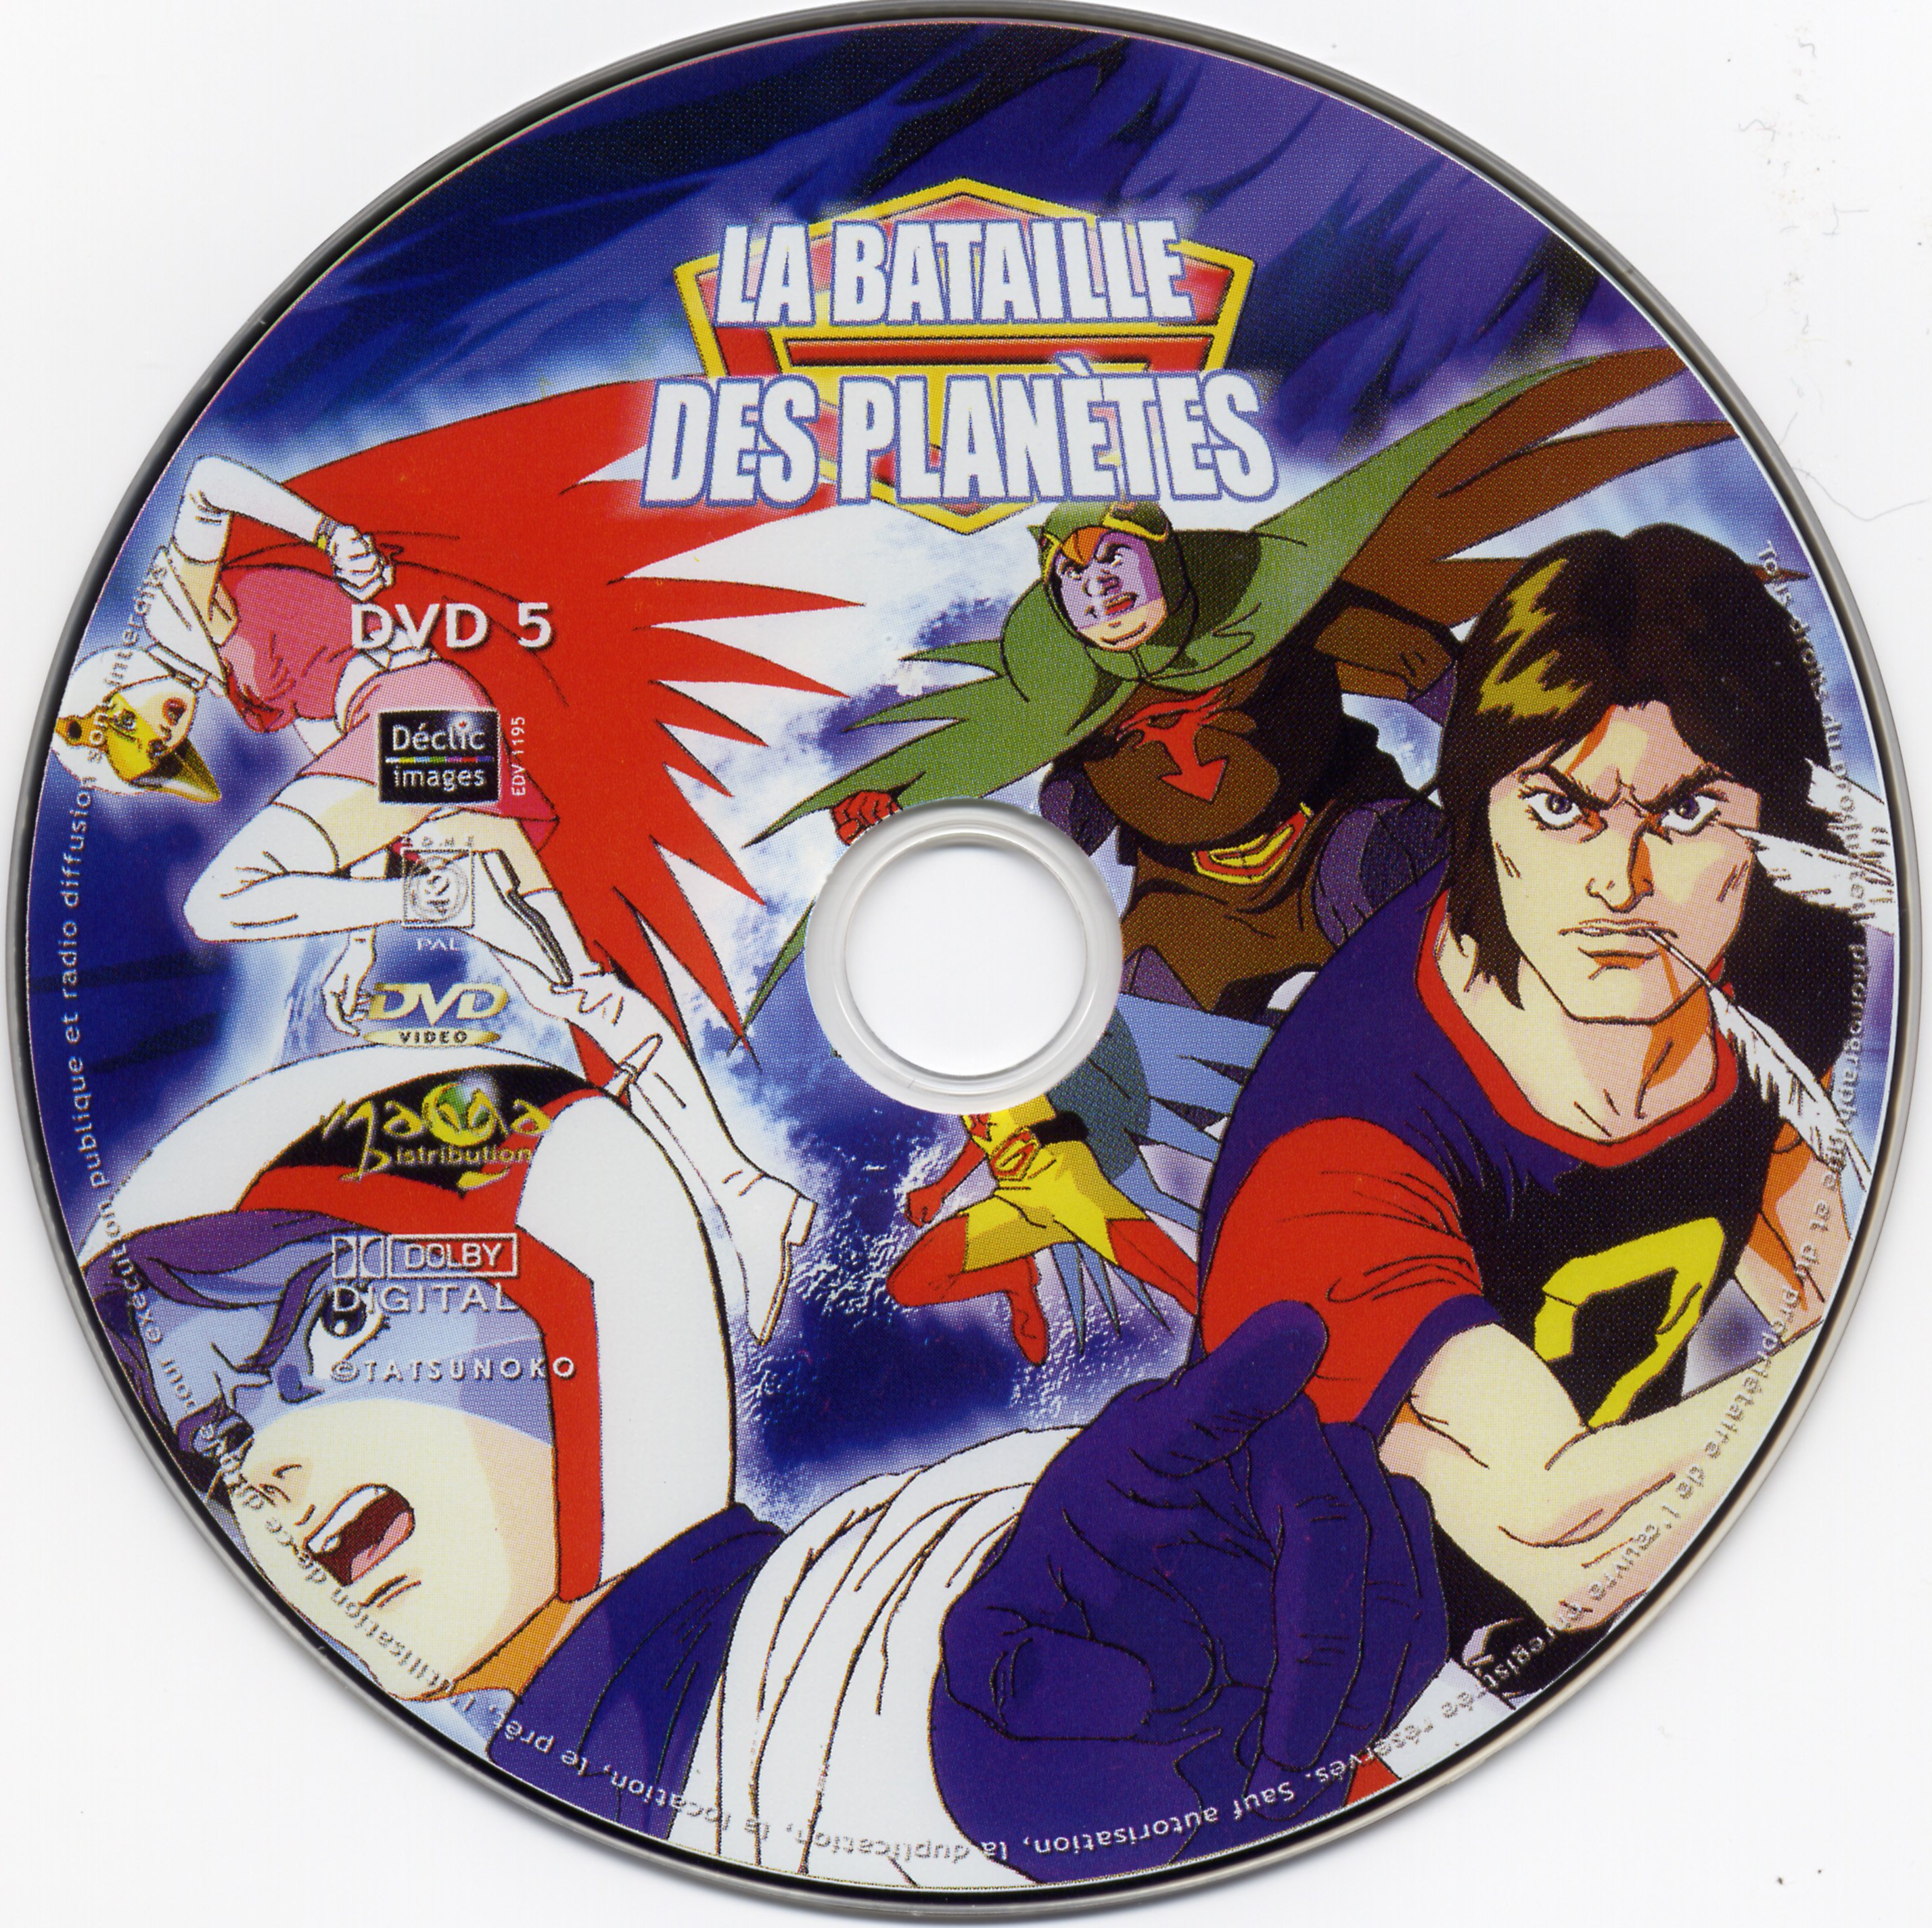 La bataille des planetes DVD 05